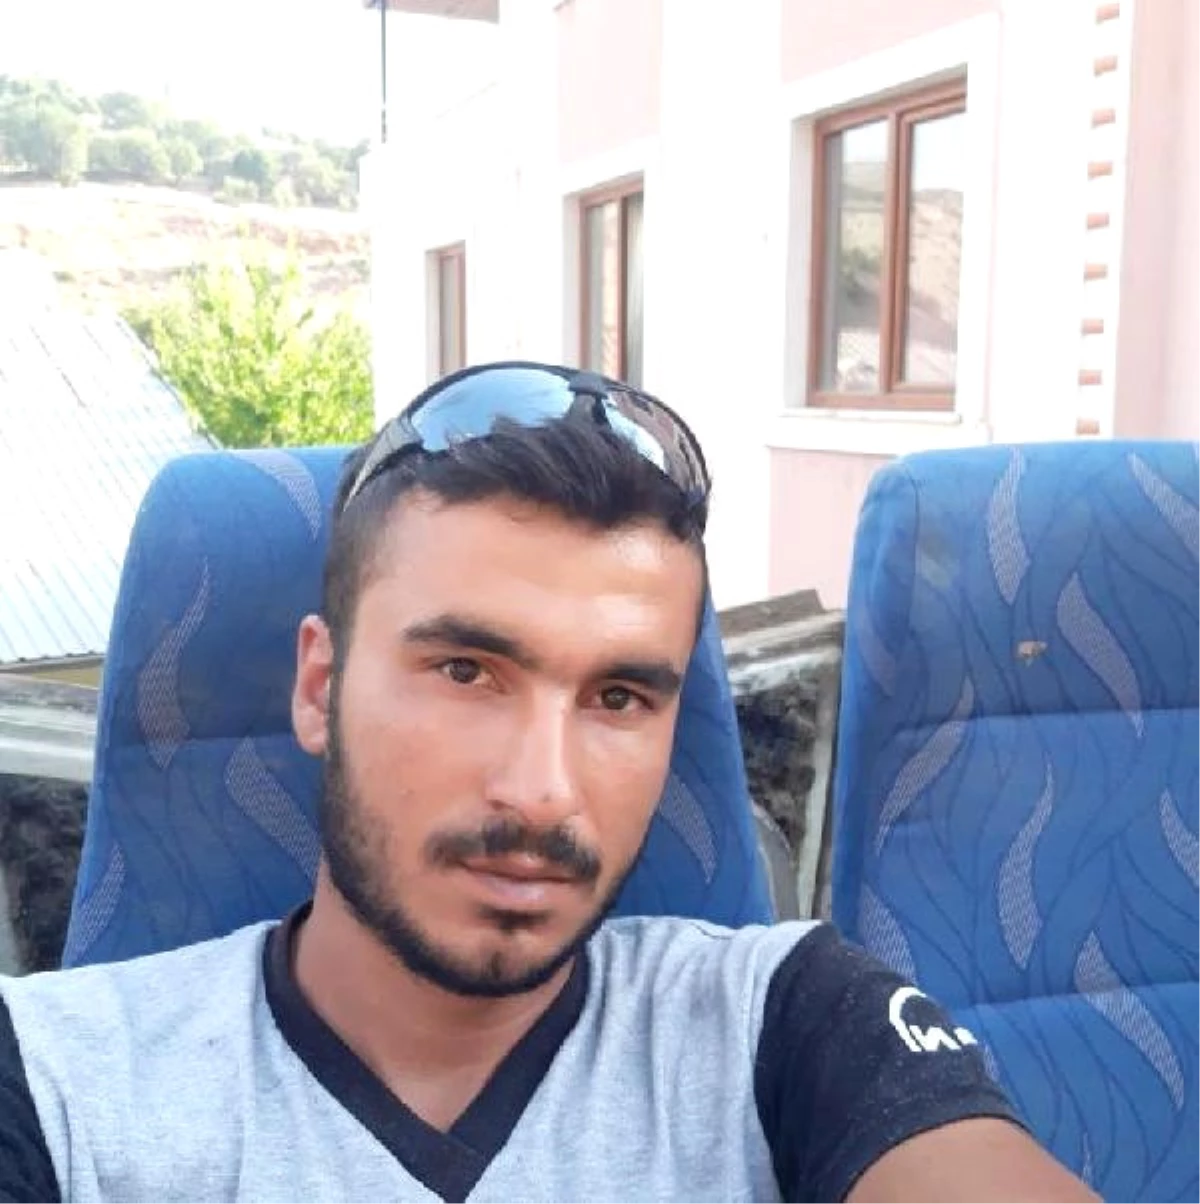 Kiralık Araçla Gezi Planı Acı Bitti; Sercan ve Metin Öldü